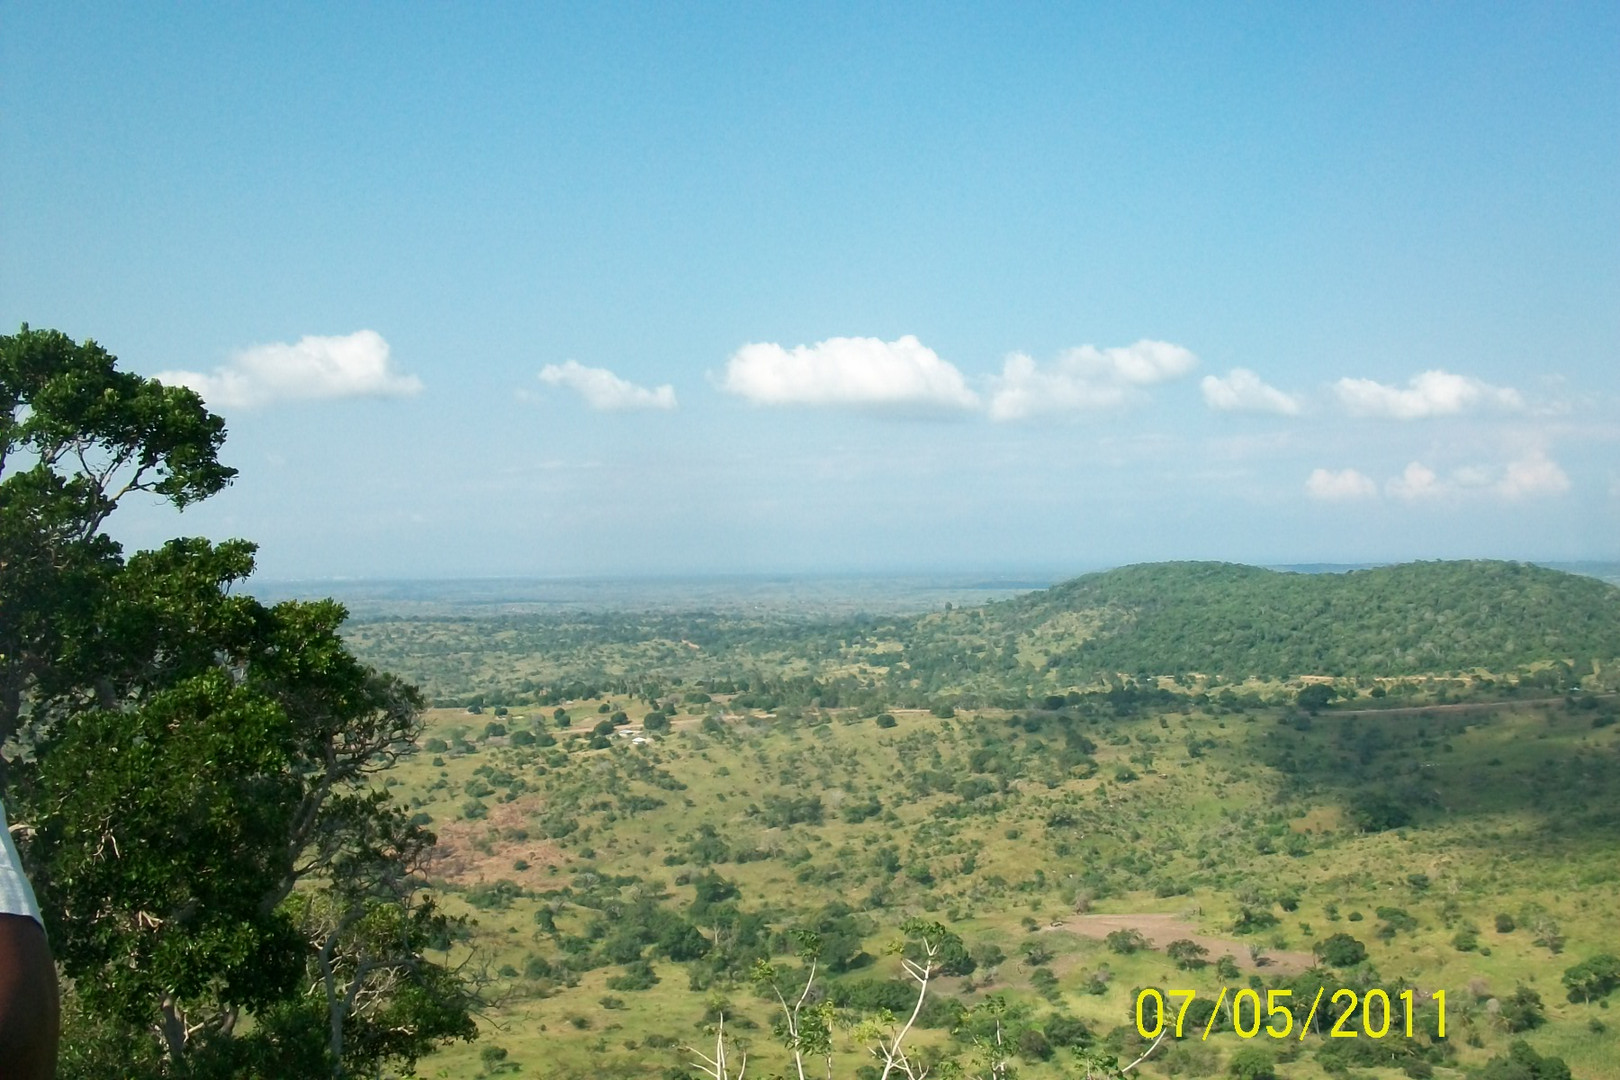 Natur pur.Shimba Hills...South coast of Kenya